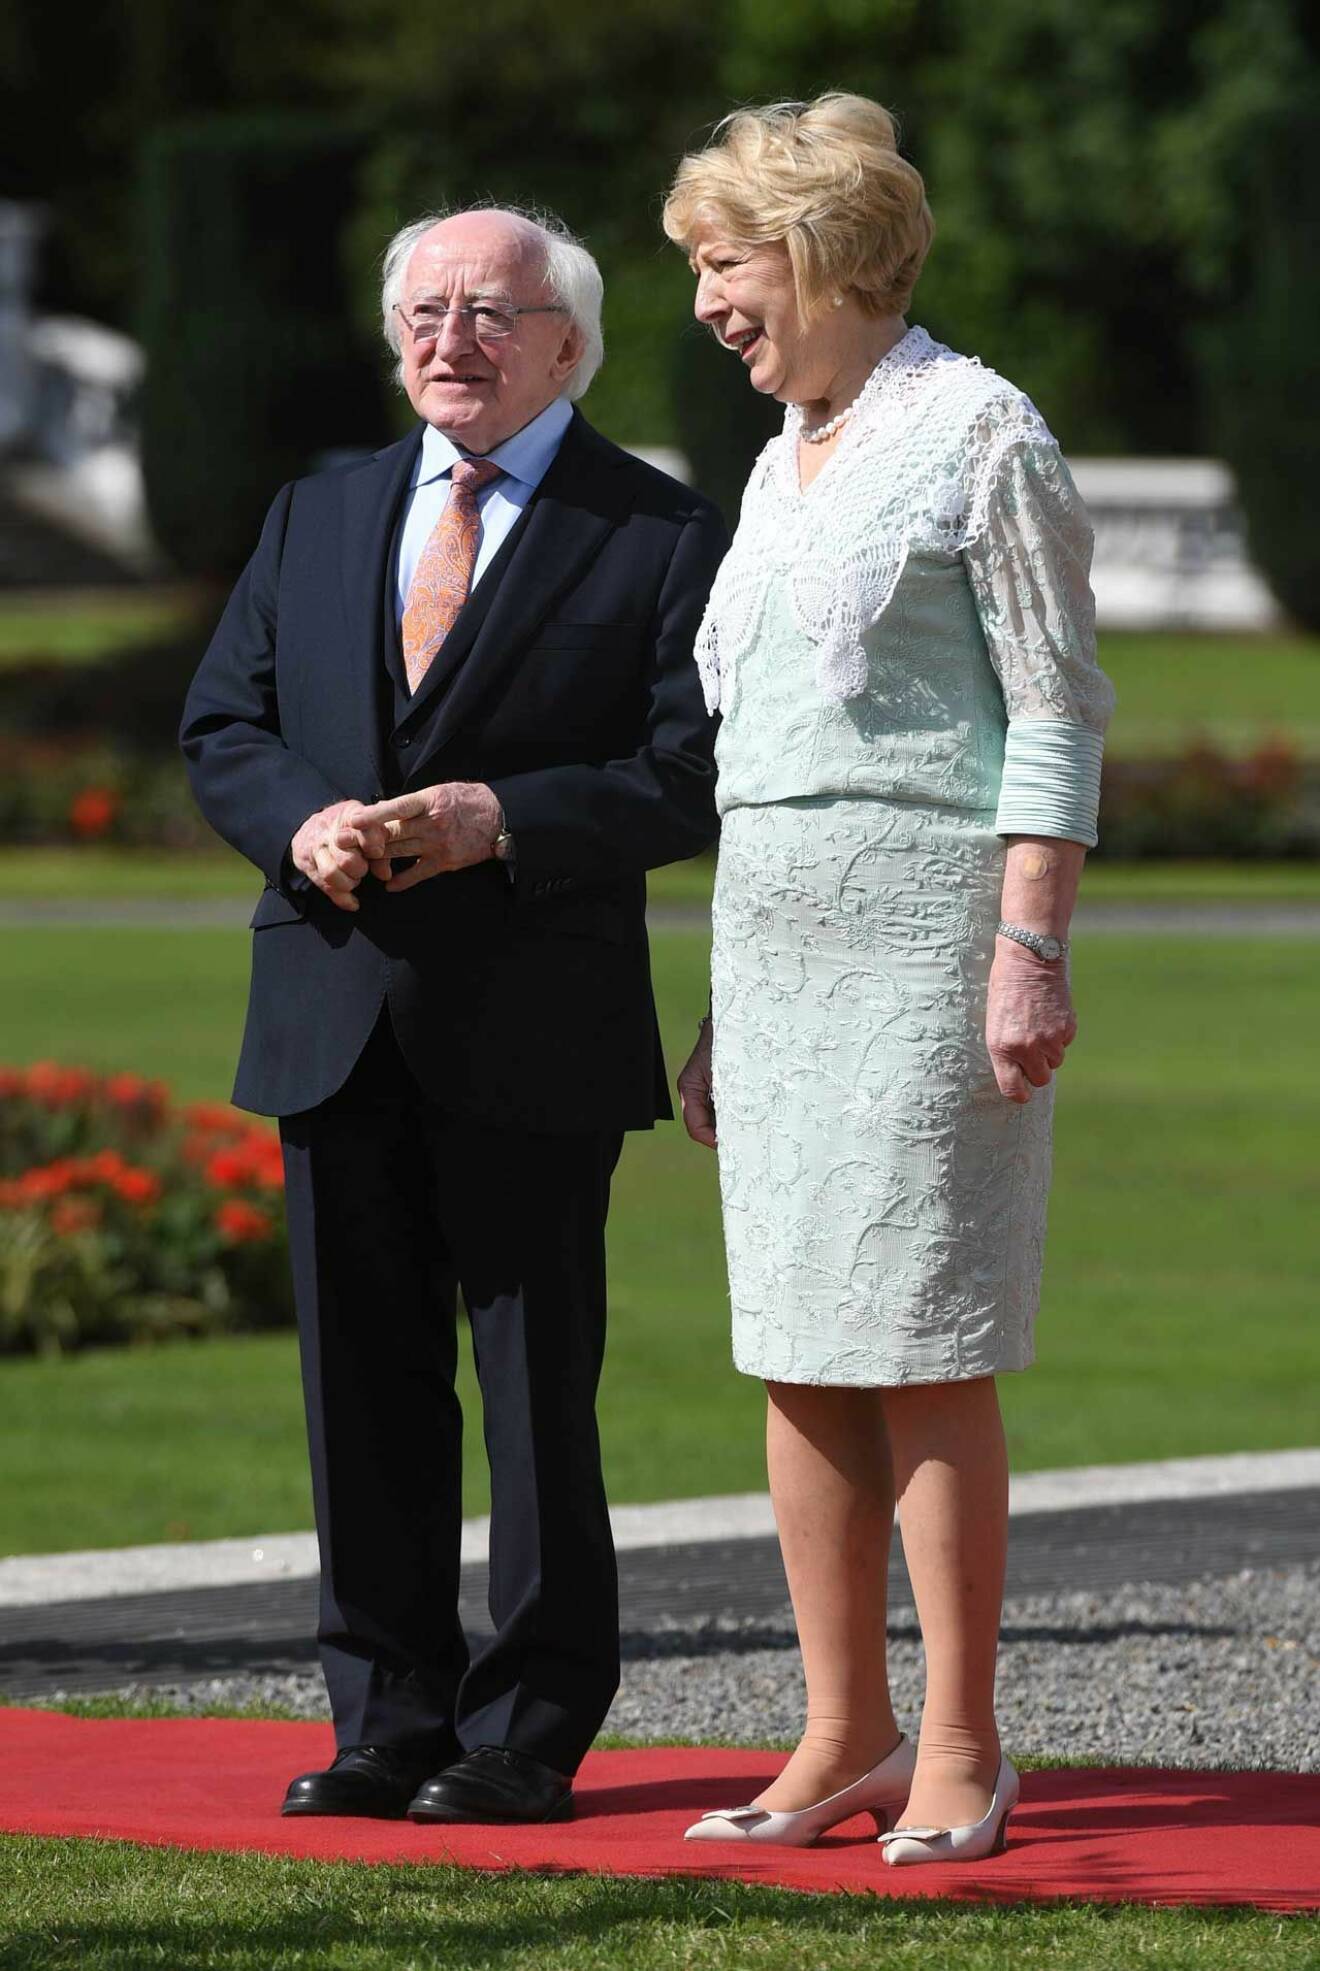 President Michael D. Higgins med sin fru Sabina.